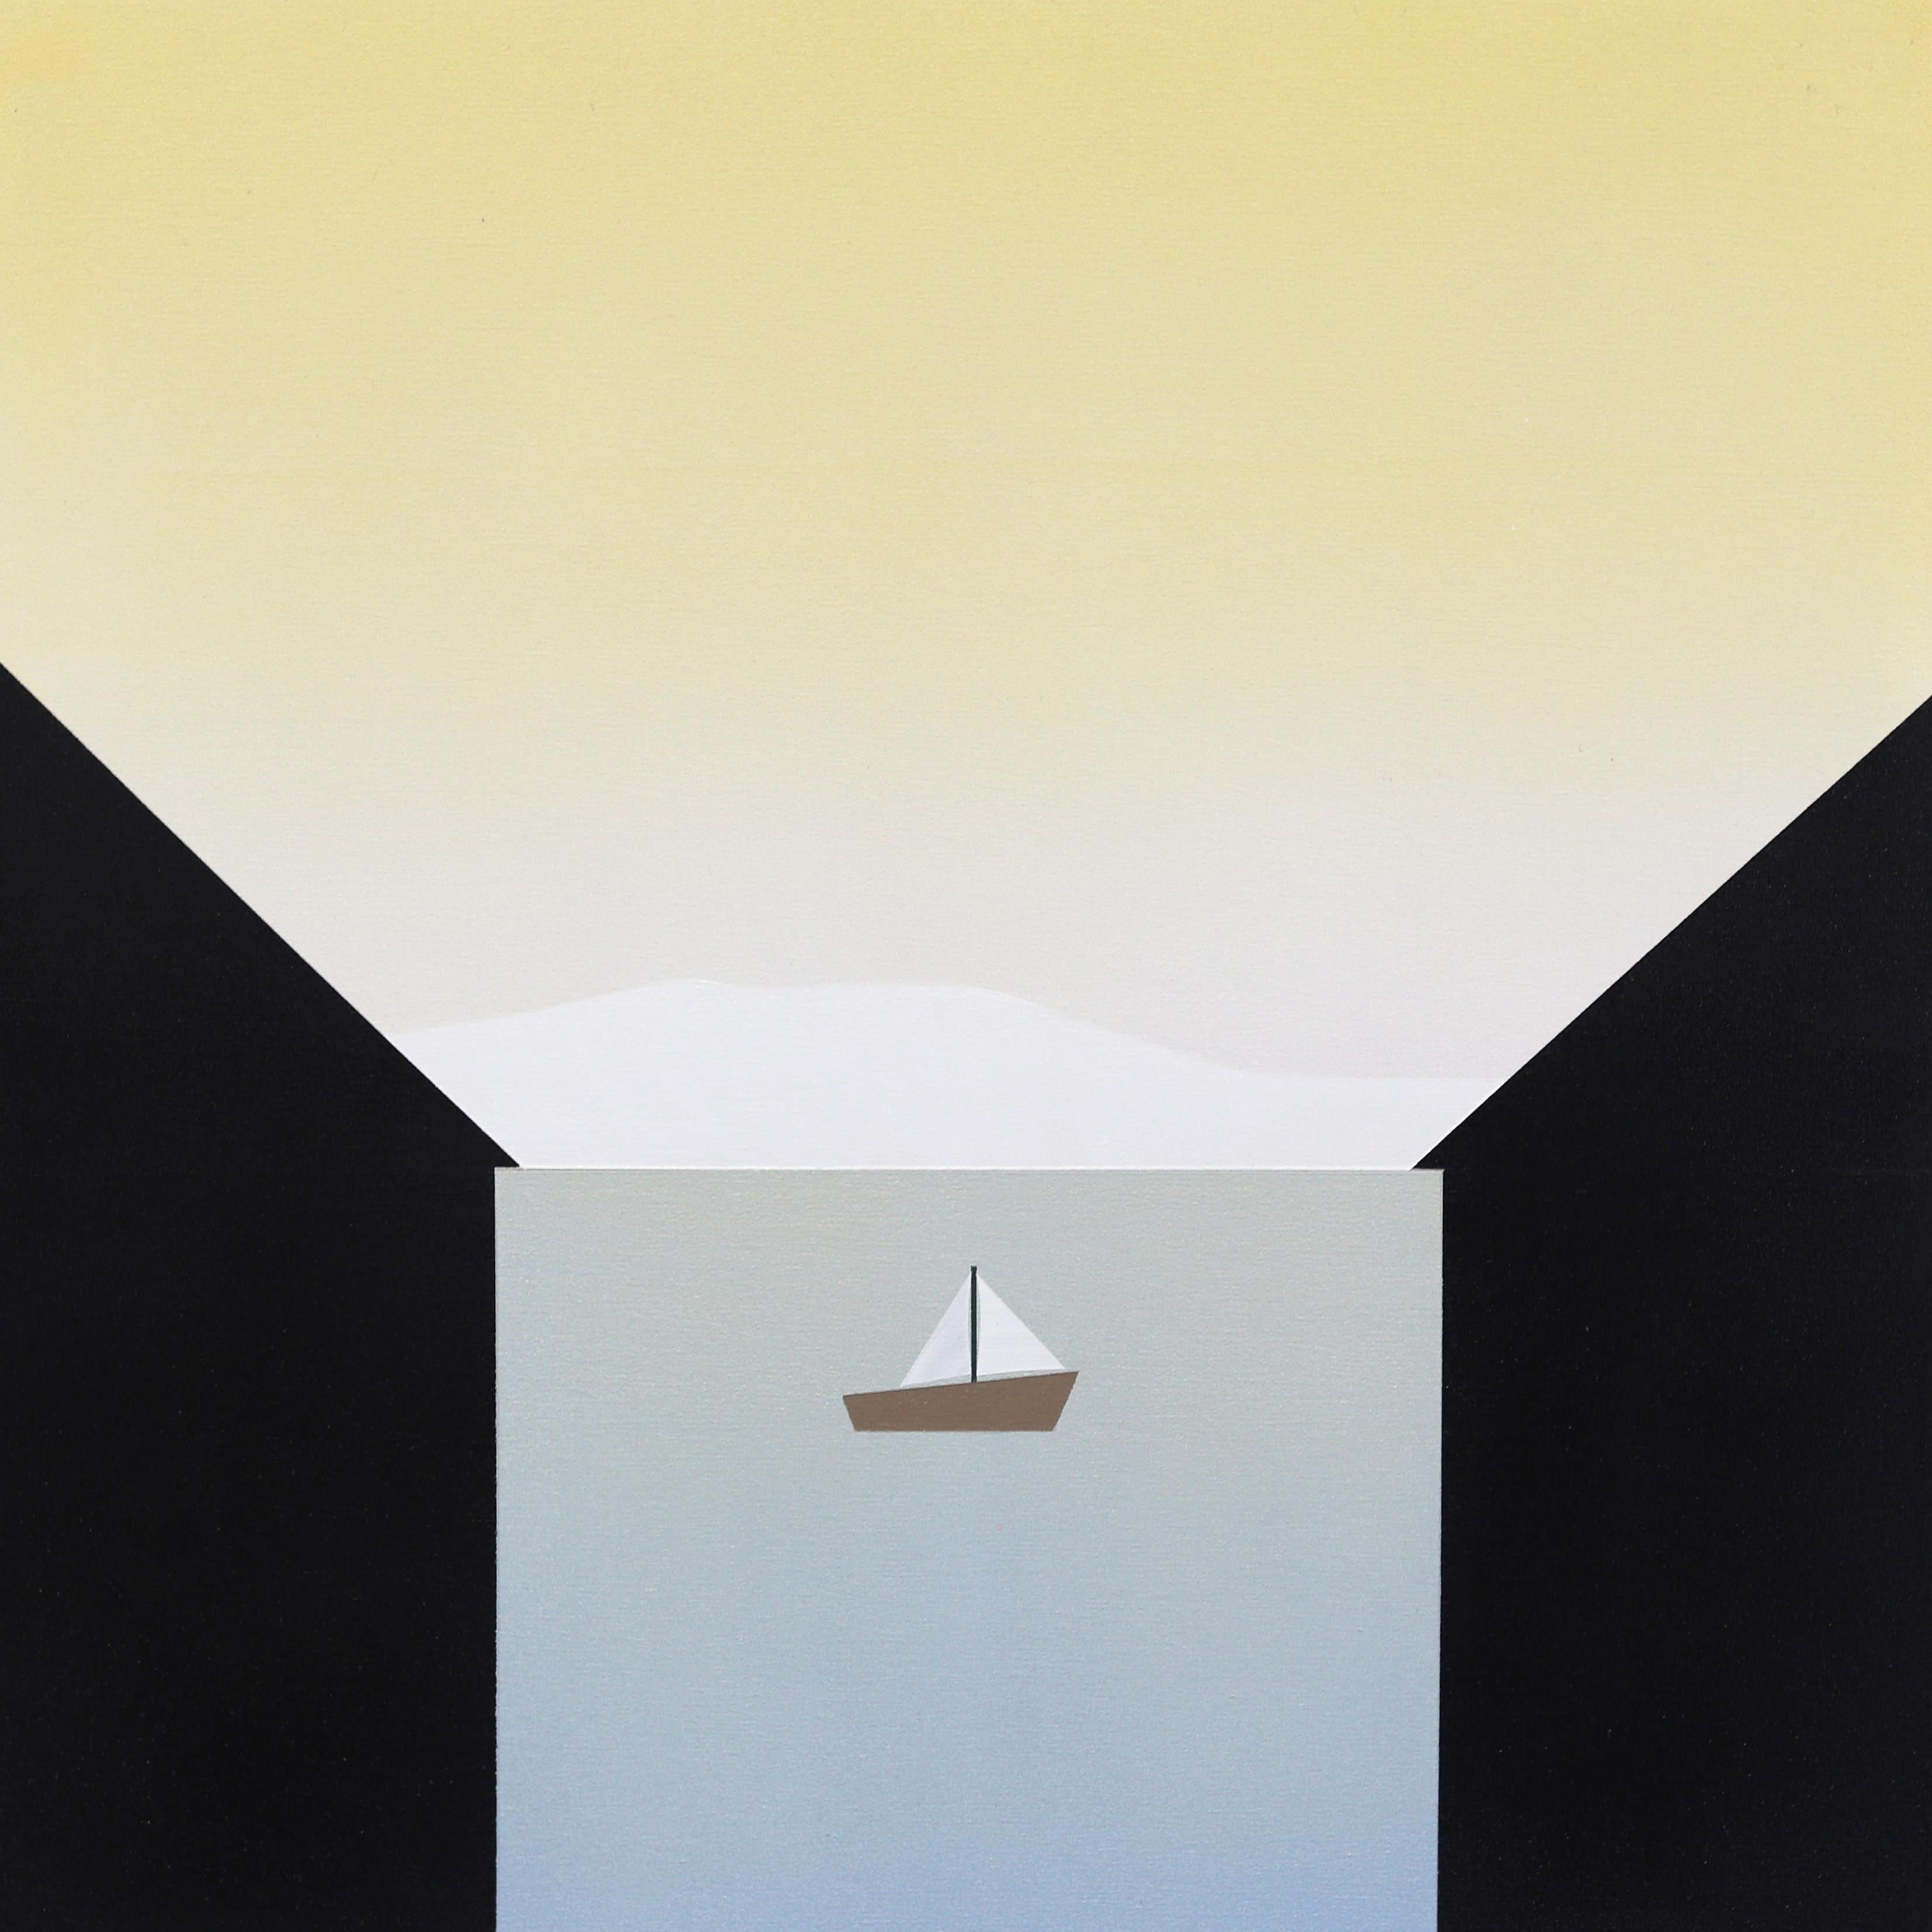 Between - Minimalistische Scenic Landscape Gemälde Boot auf Wasser